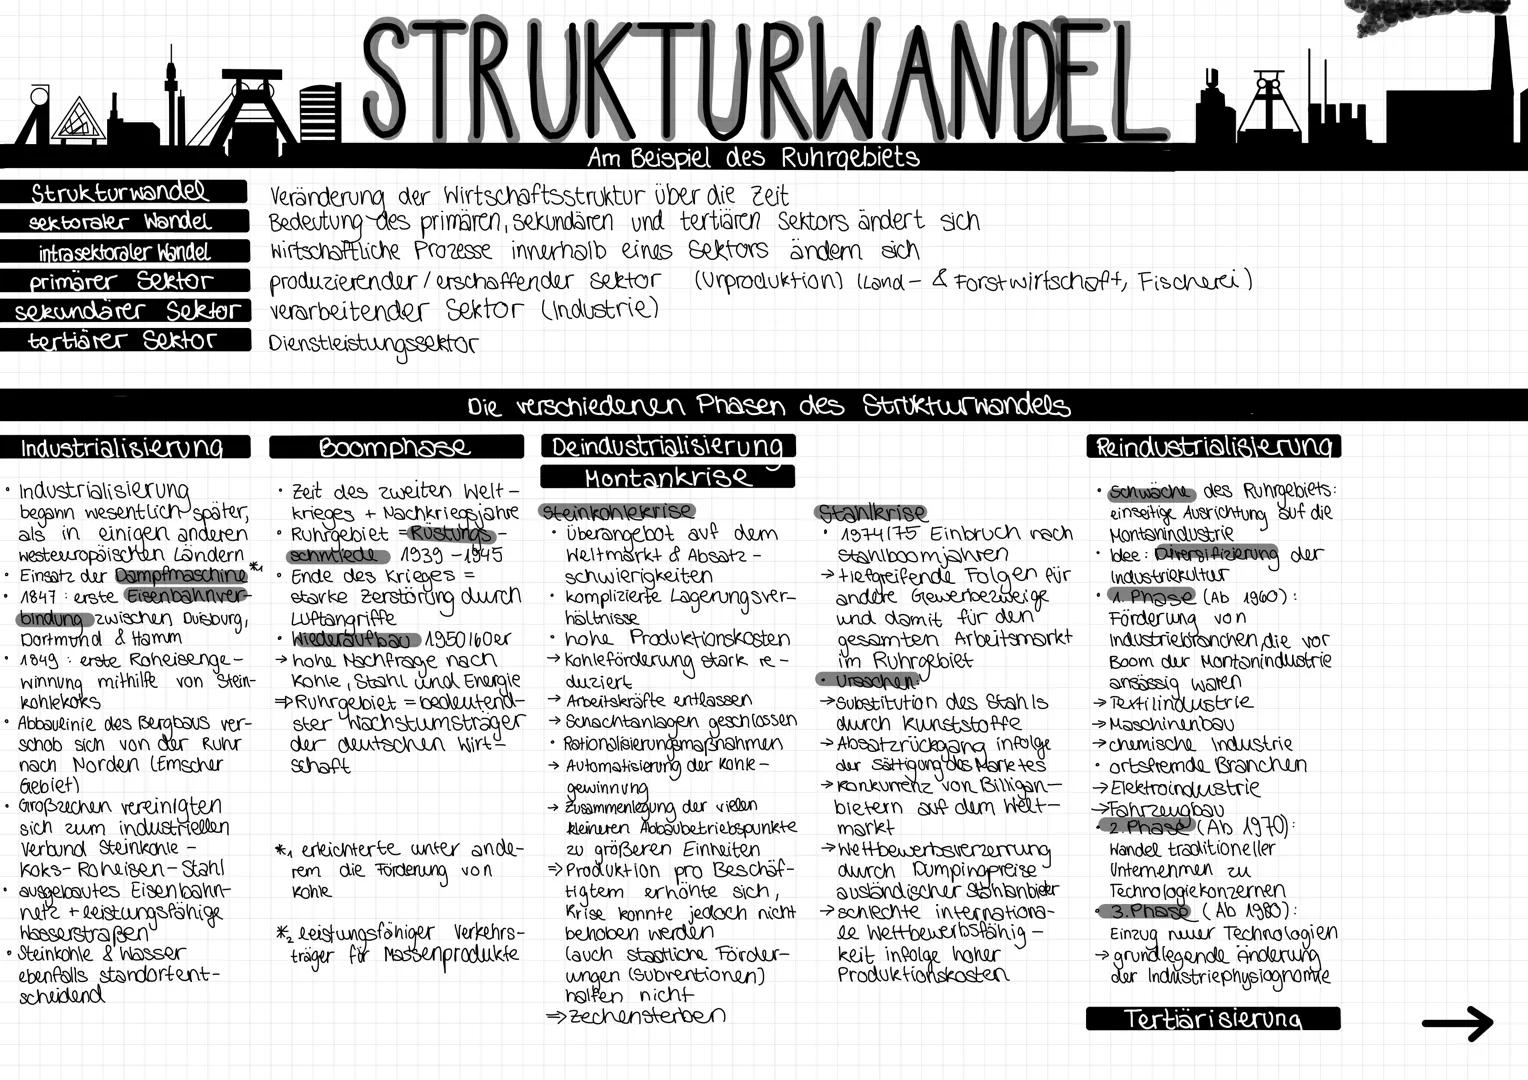 WLA STRUKTURWANDEL AL
Am Beispiel des Ruhrgebiets
Strukturwandel Veränderung der Wirtschaftsstruktur über die Zeit
sektoraler Wandel
intrase